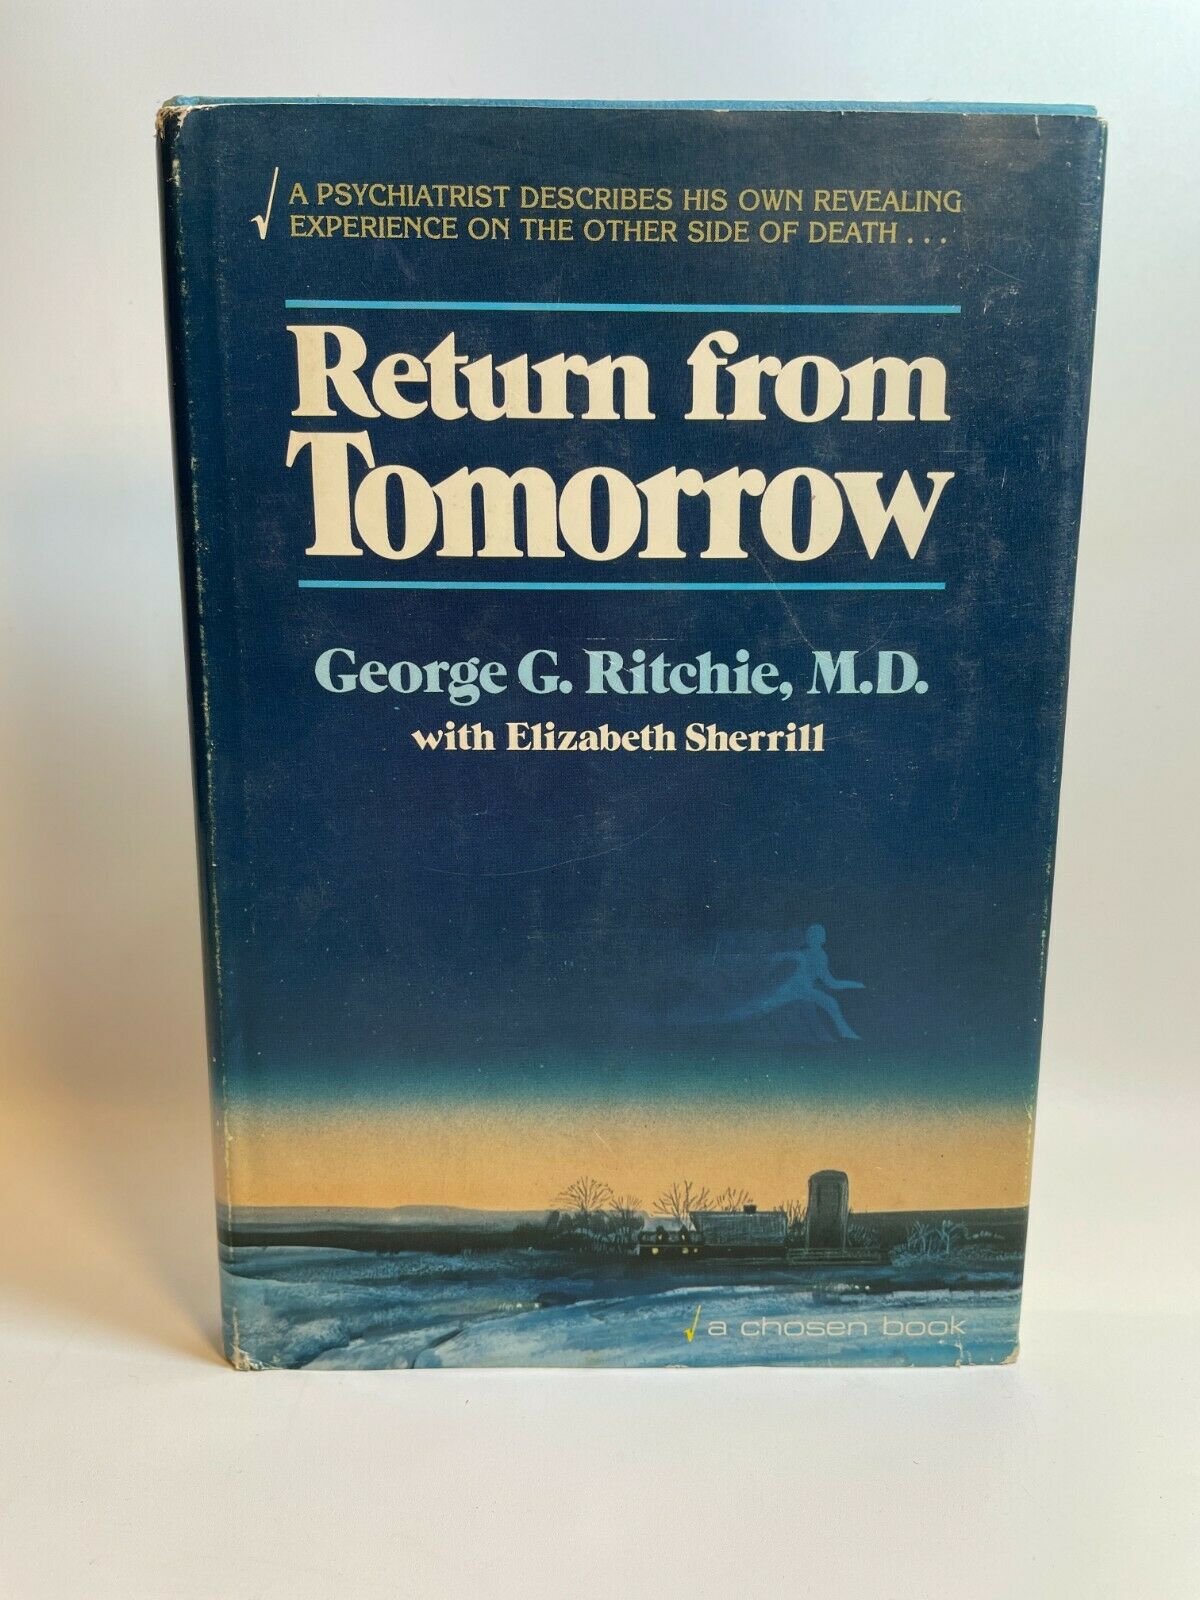 Return from Tomorrow, George G. Ritchie w/ Elizabeth Sherrill (1978) A2